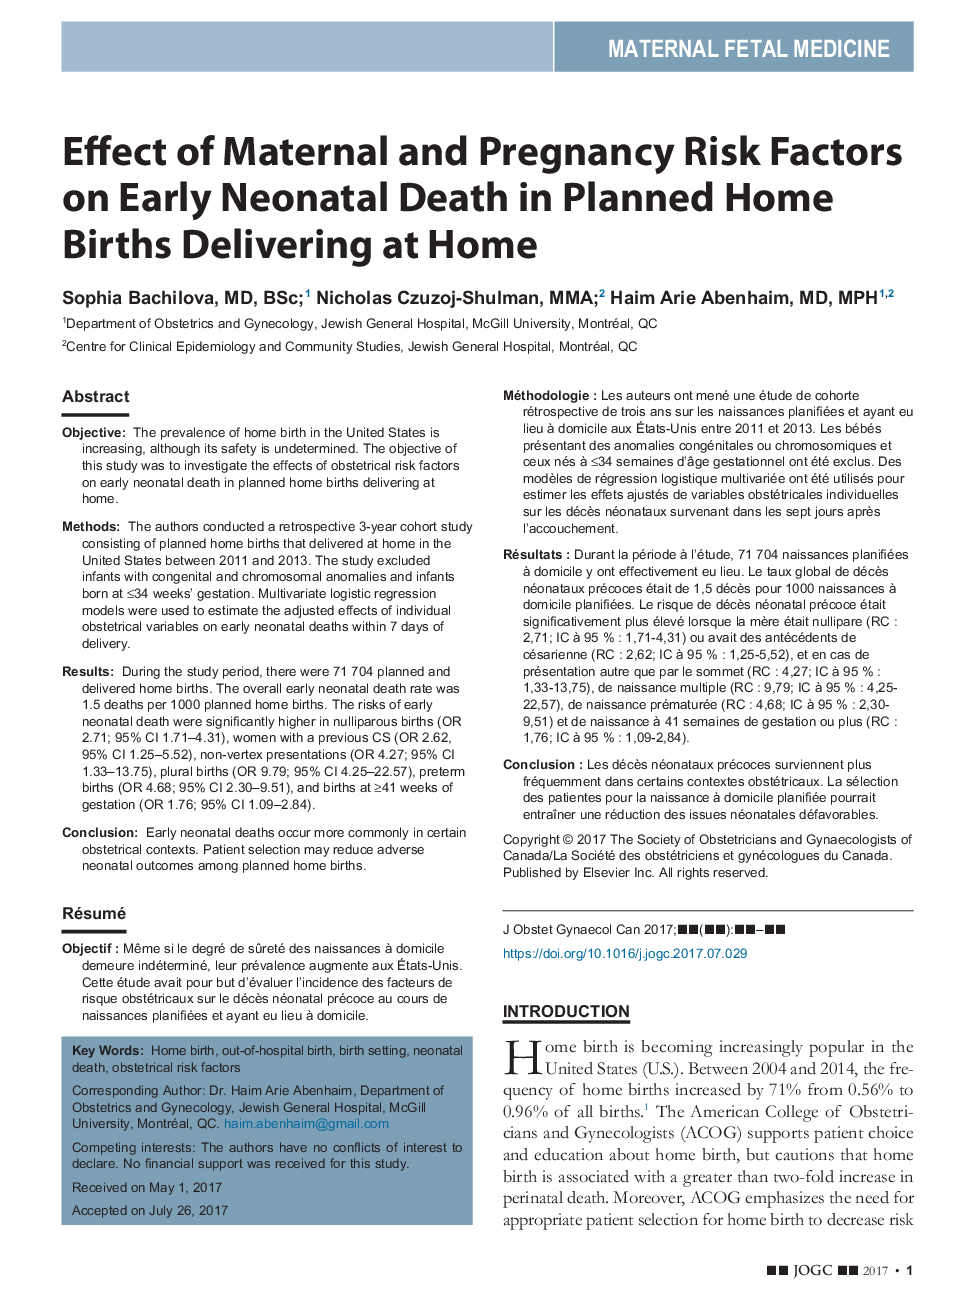 تاثیر عوامل خطر مادری و بارداری بر مرگ زودرس نوزادان در خانه های برنامه ریزی شده زایمان در خانه 